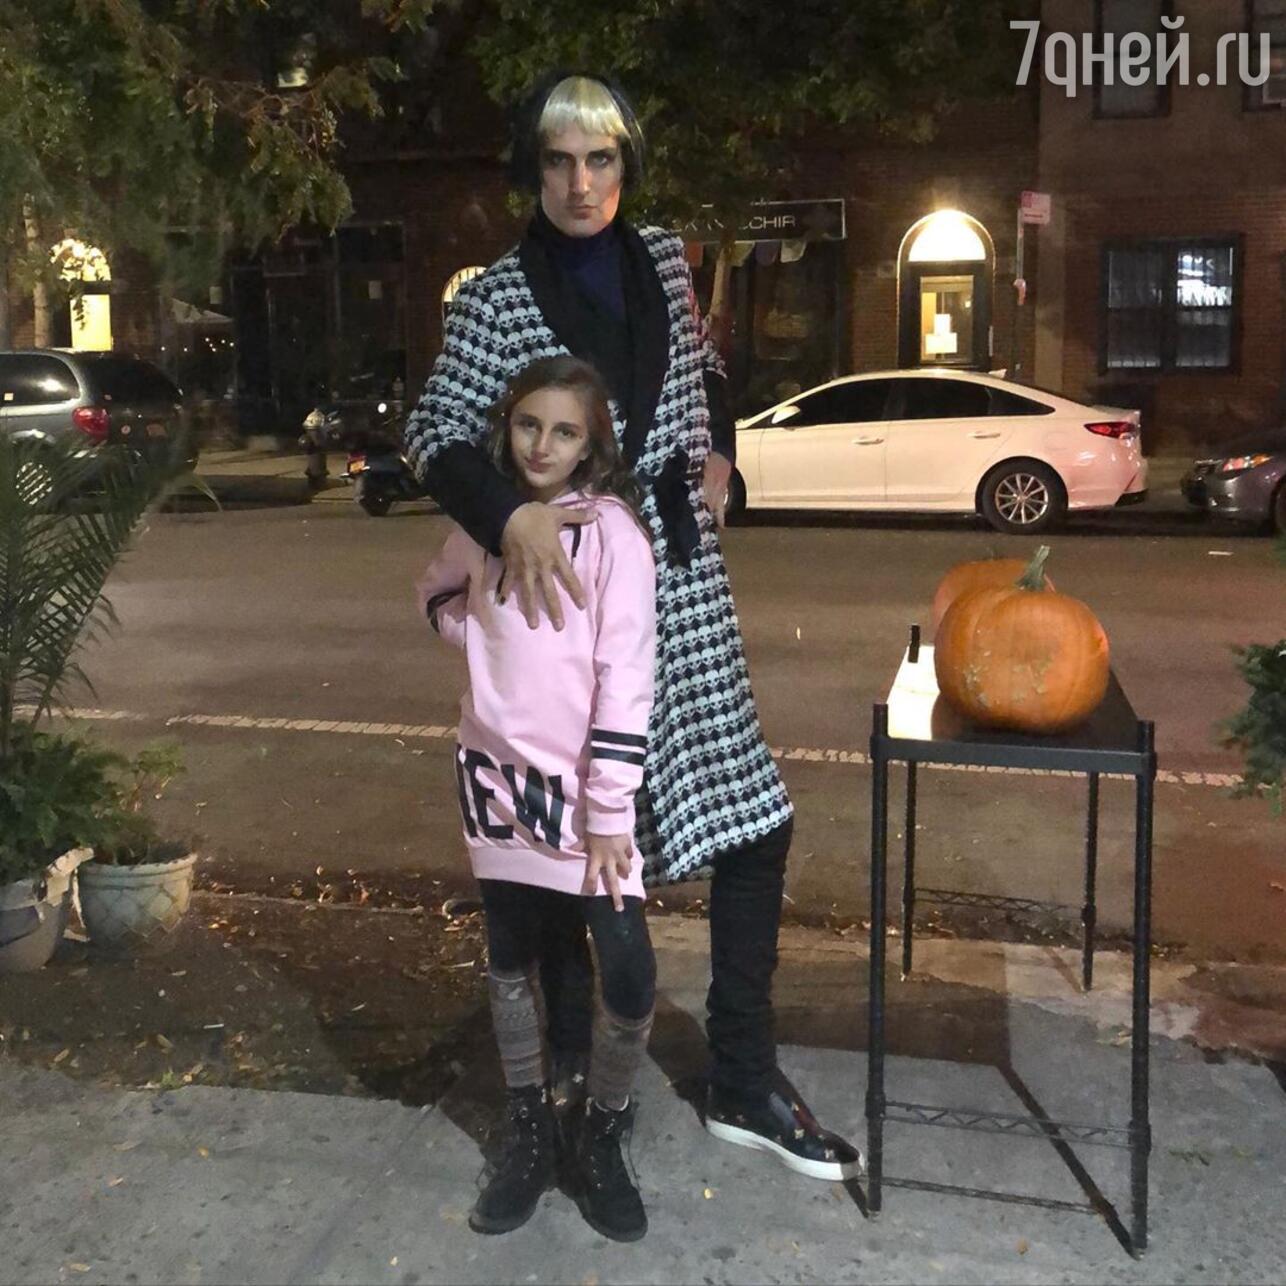 Михаил Земцов с дочерью Клавдией нарядились на Хэллоуин